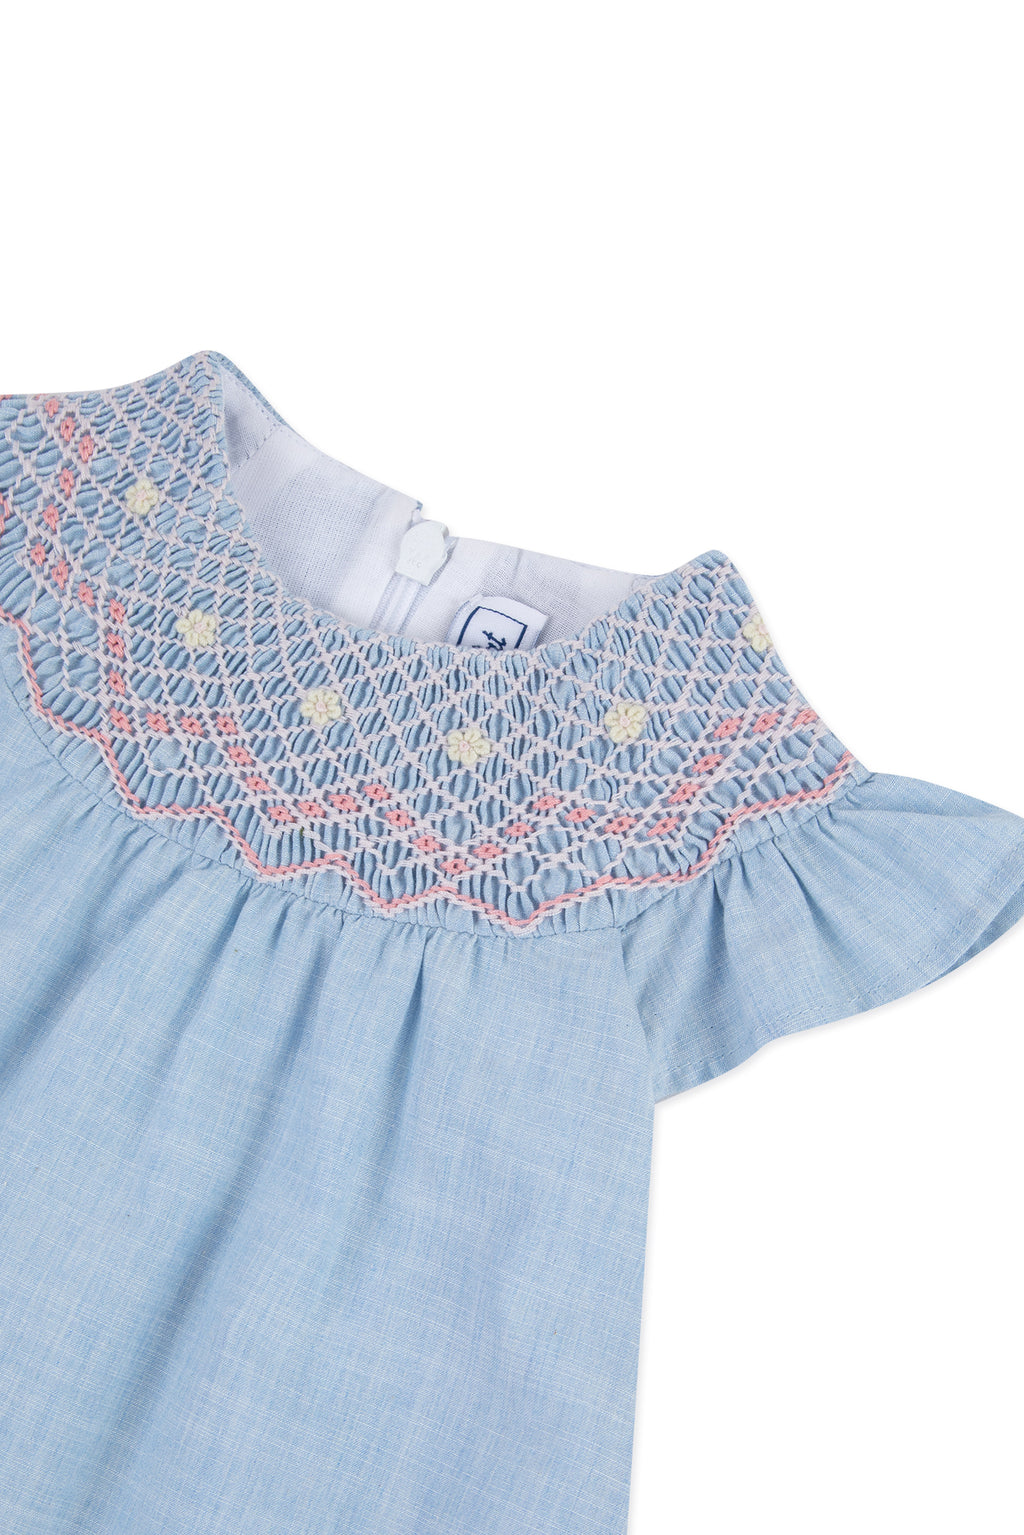 Dress - Sky blue embroidery